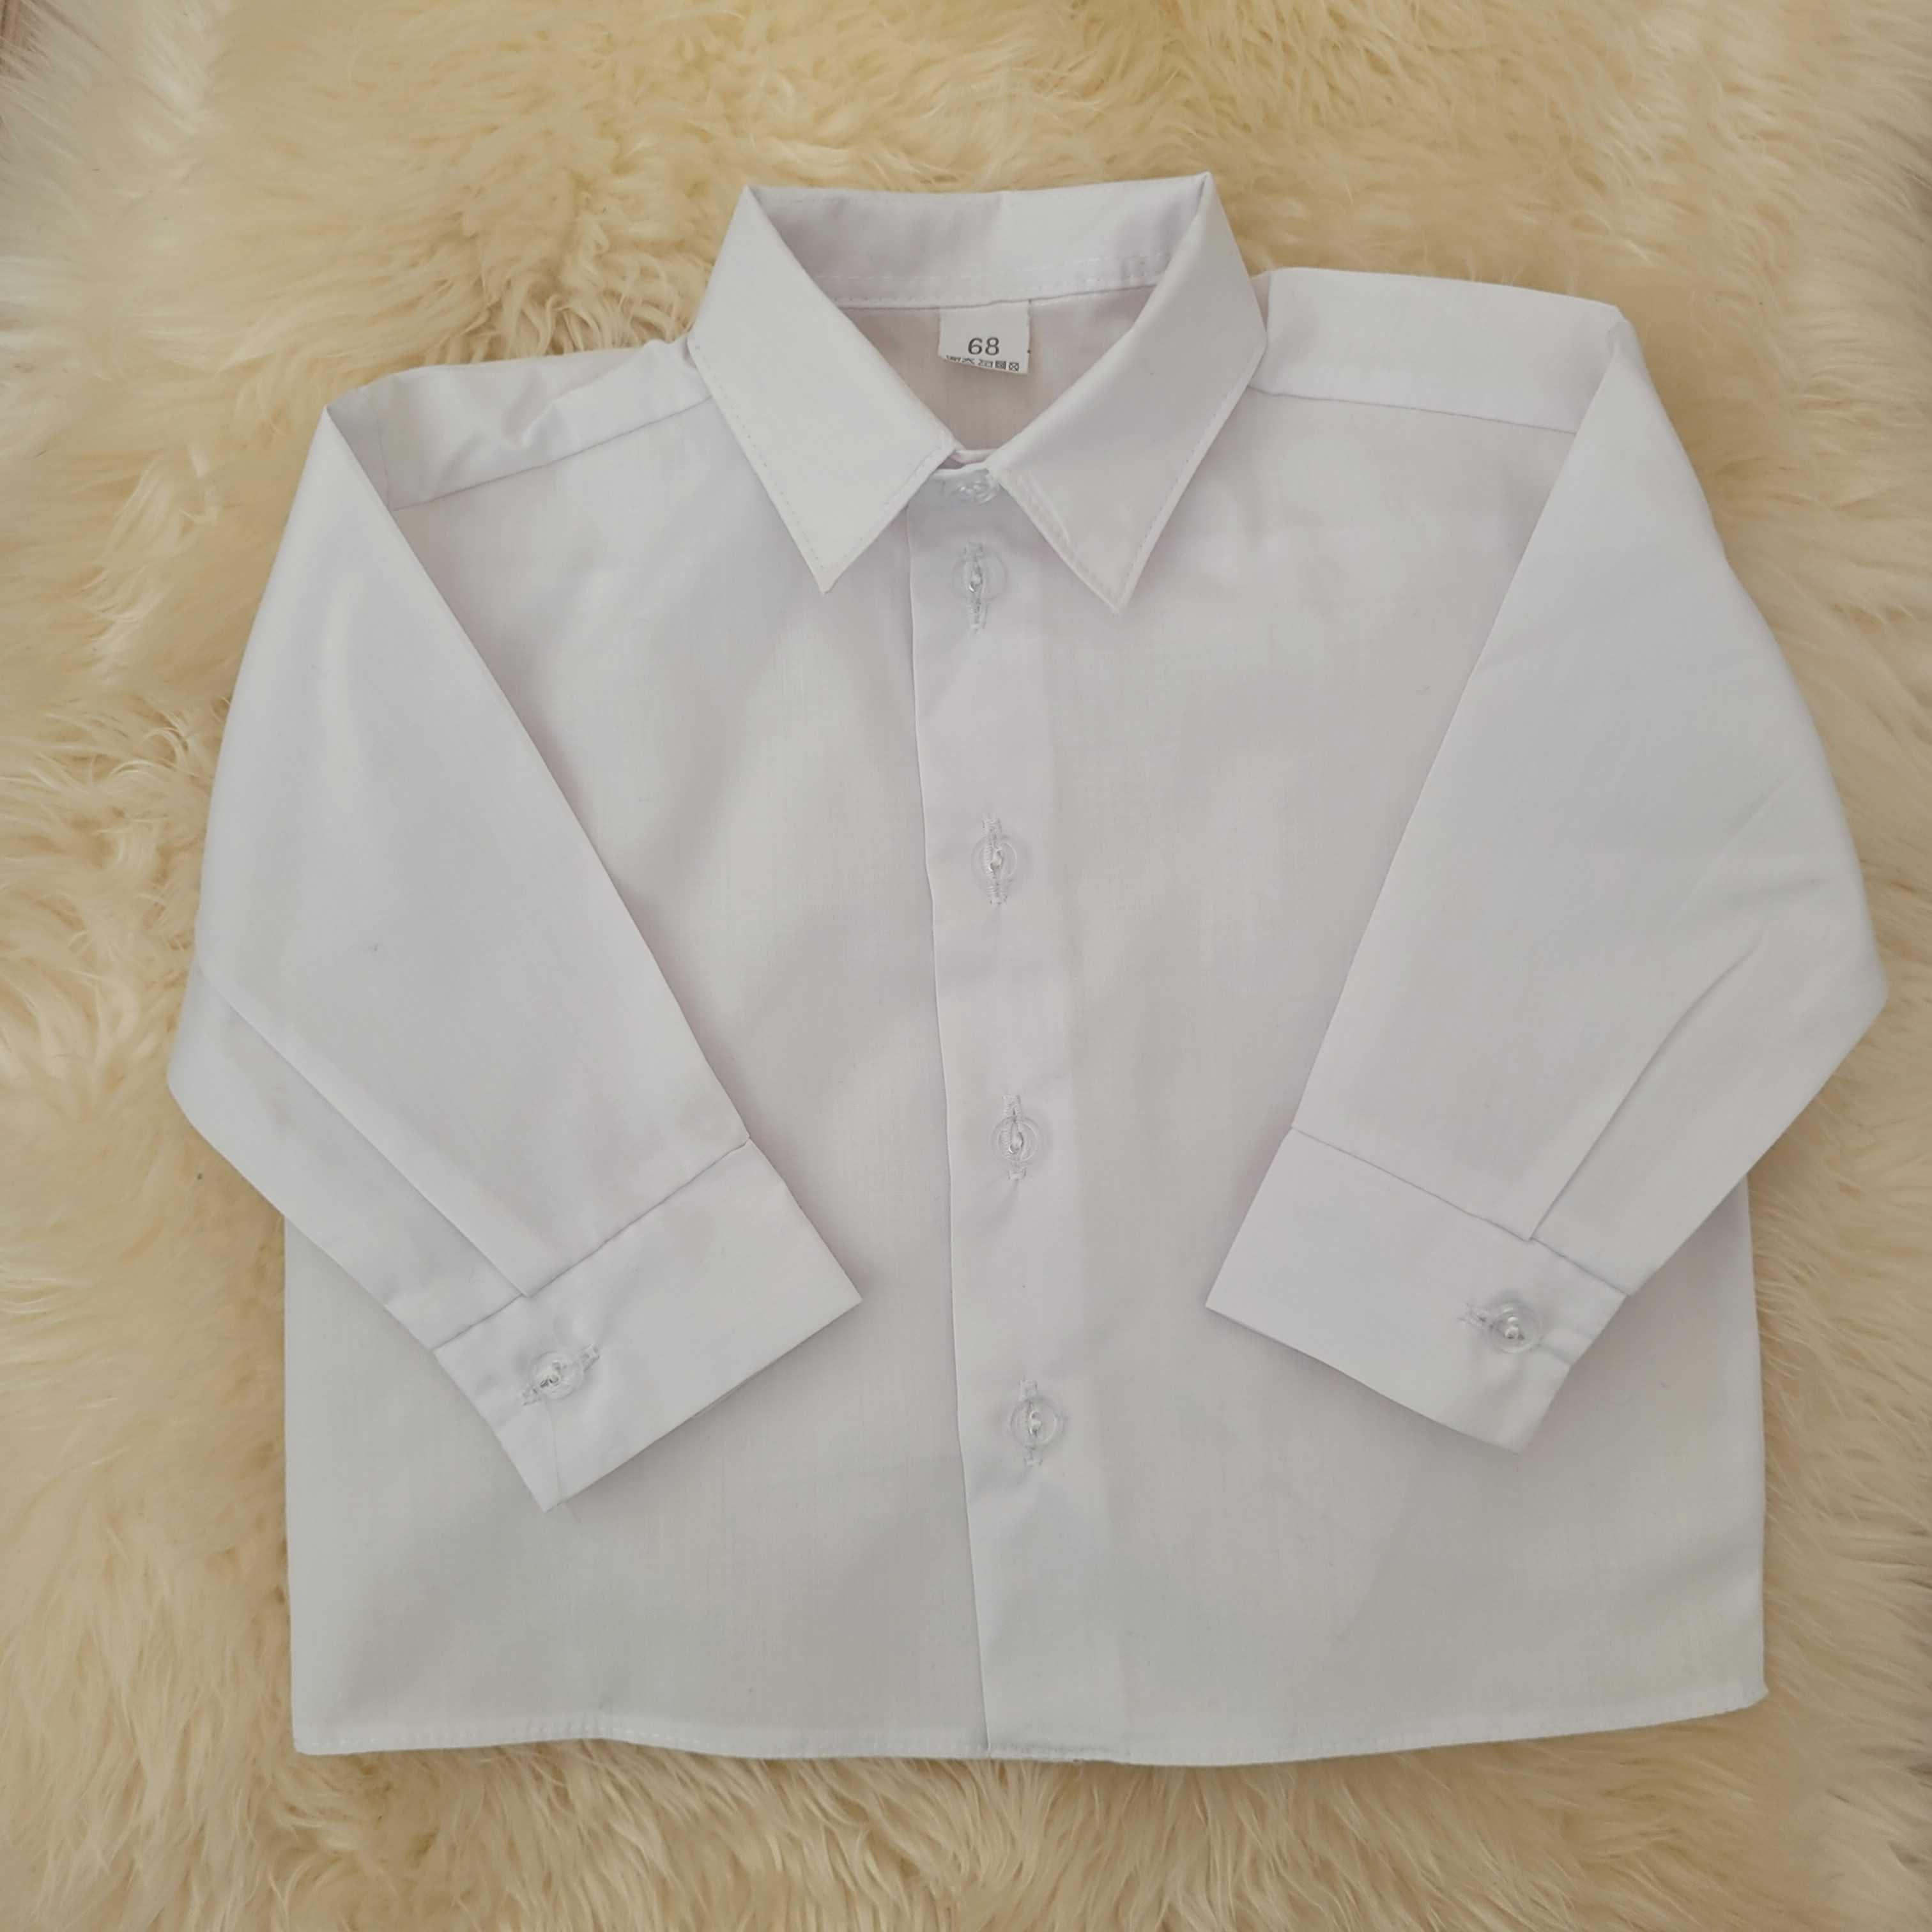 Biała koszula do chrztu roz. 68 - jak NOWA